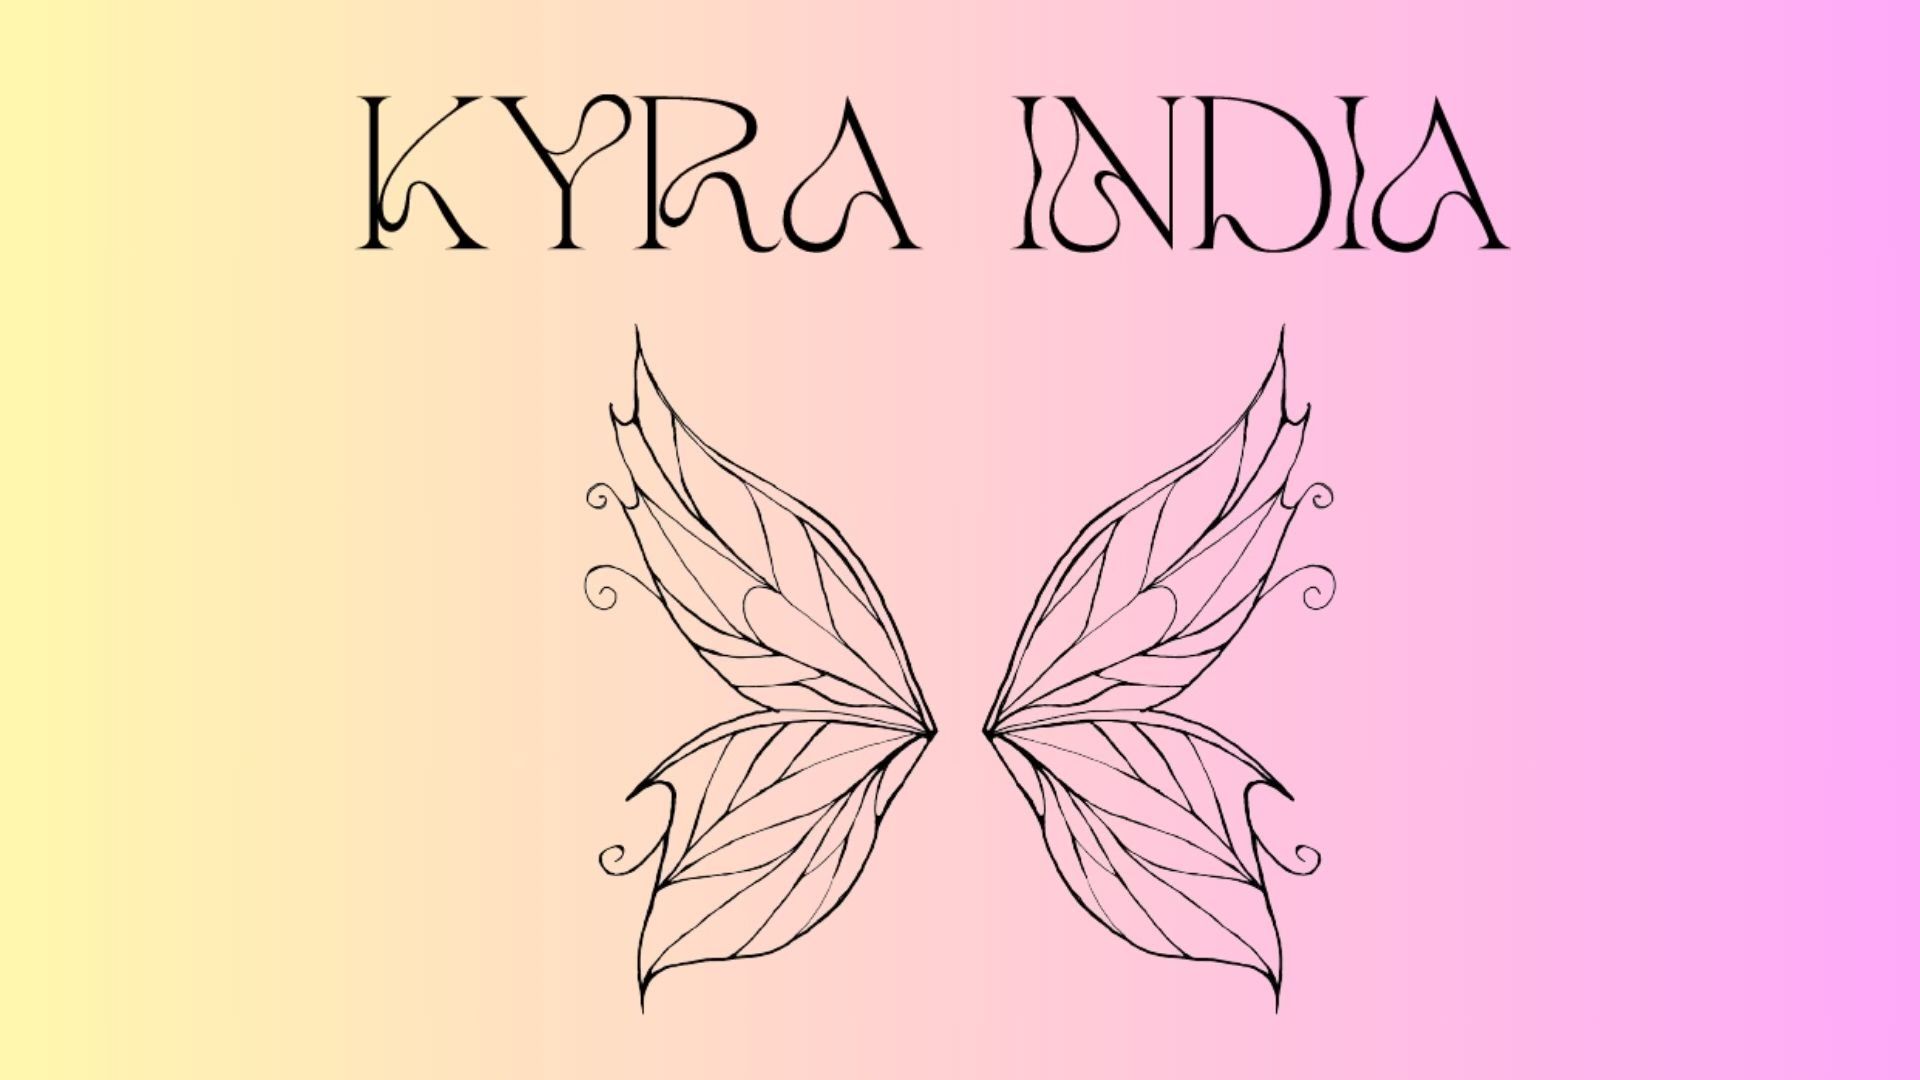 KYRA INDIA